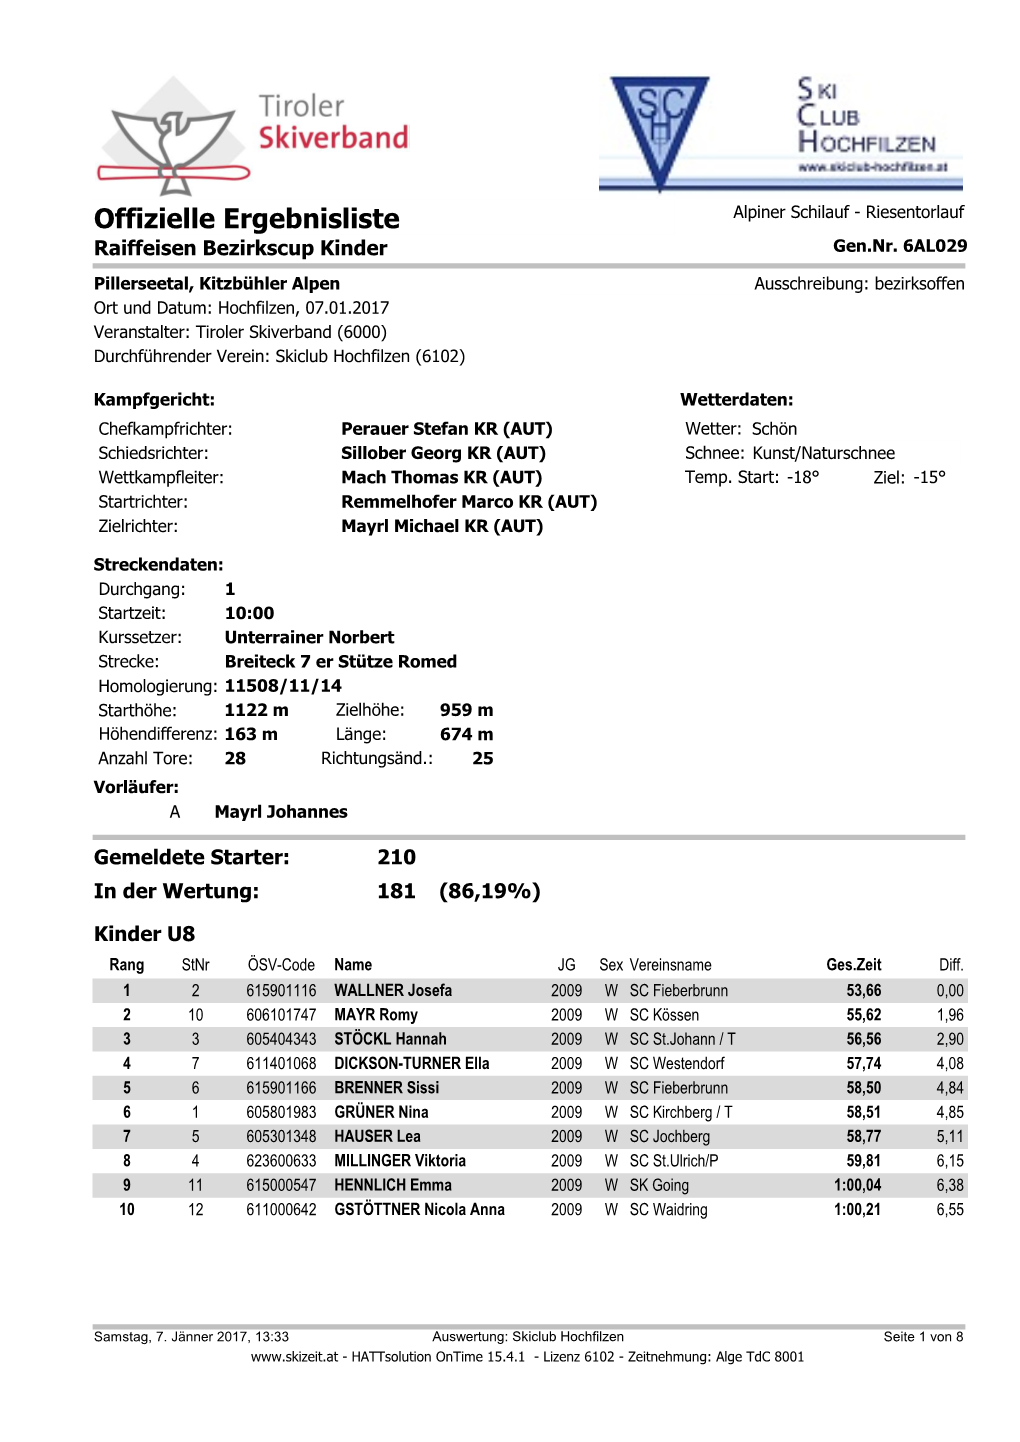 Offizielle Ergebnisliste Alpiner Schilauf - Riesentorlauf Raiffeisen Bezirkscup Kinder Gen.Nr